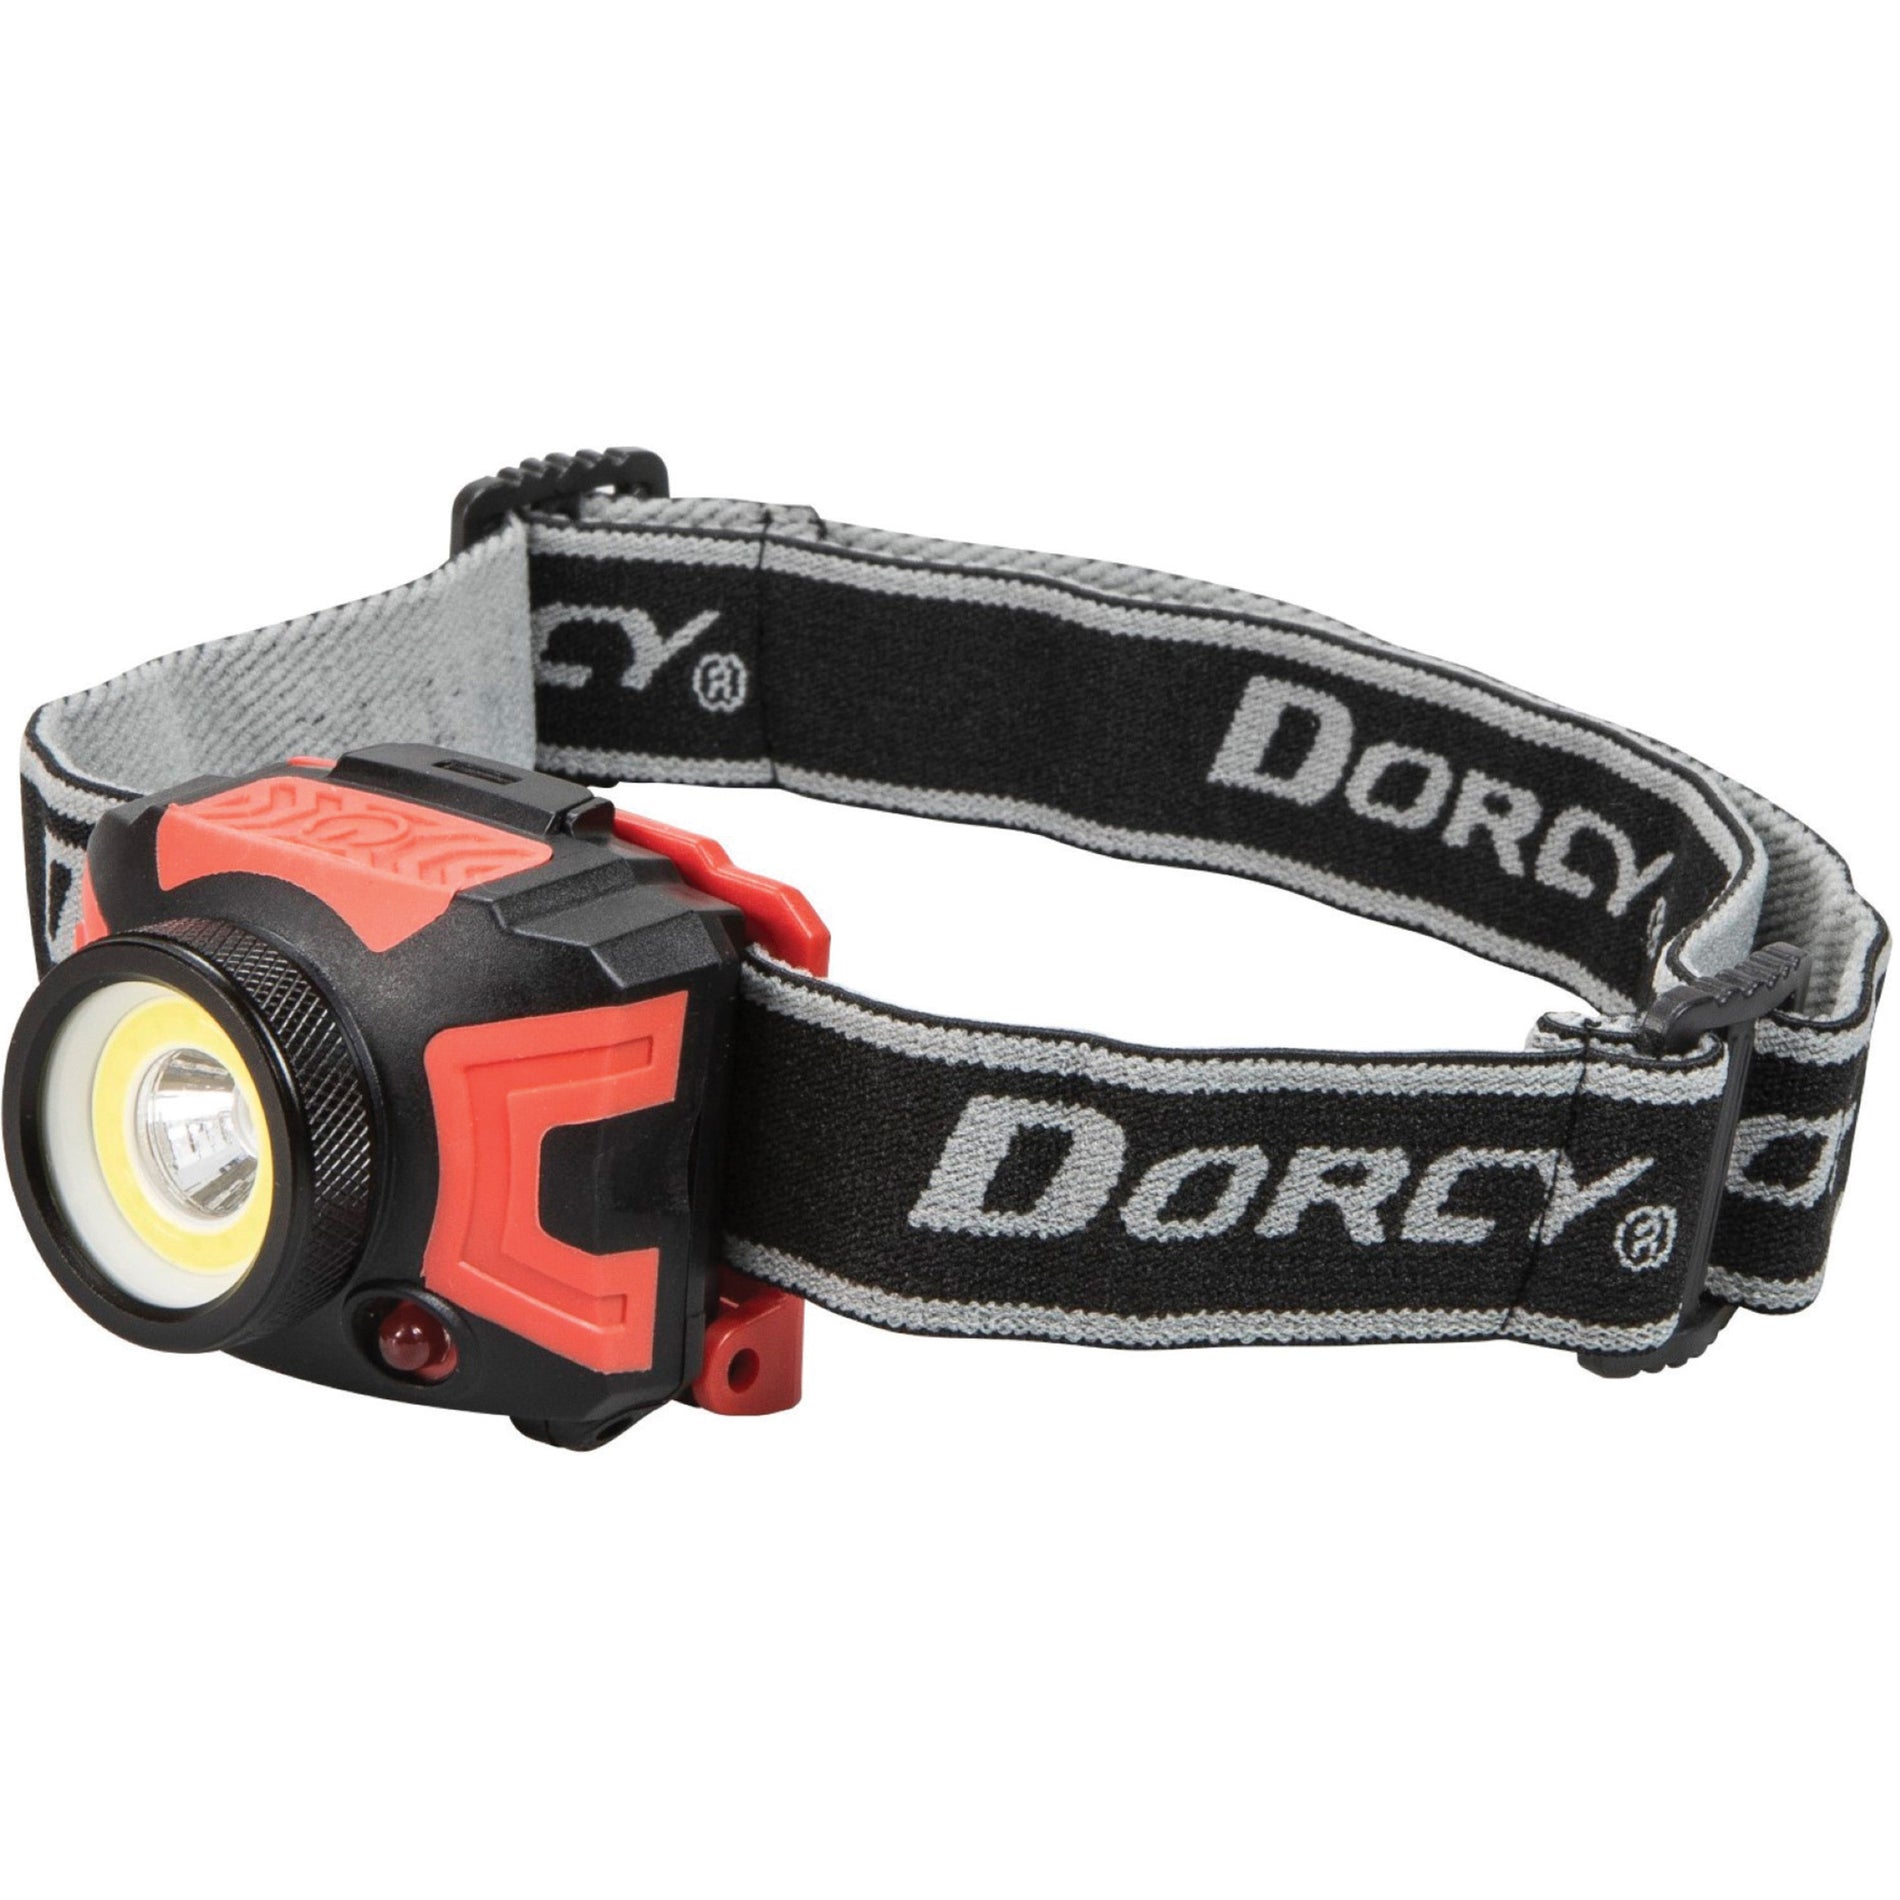 Dorcy 414335 Ultra HD 530 Lumen Kopflampe wasserdicht AAA-Batterie betrieben